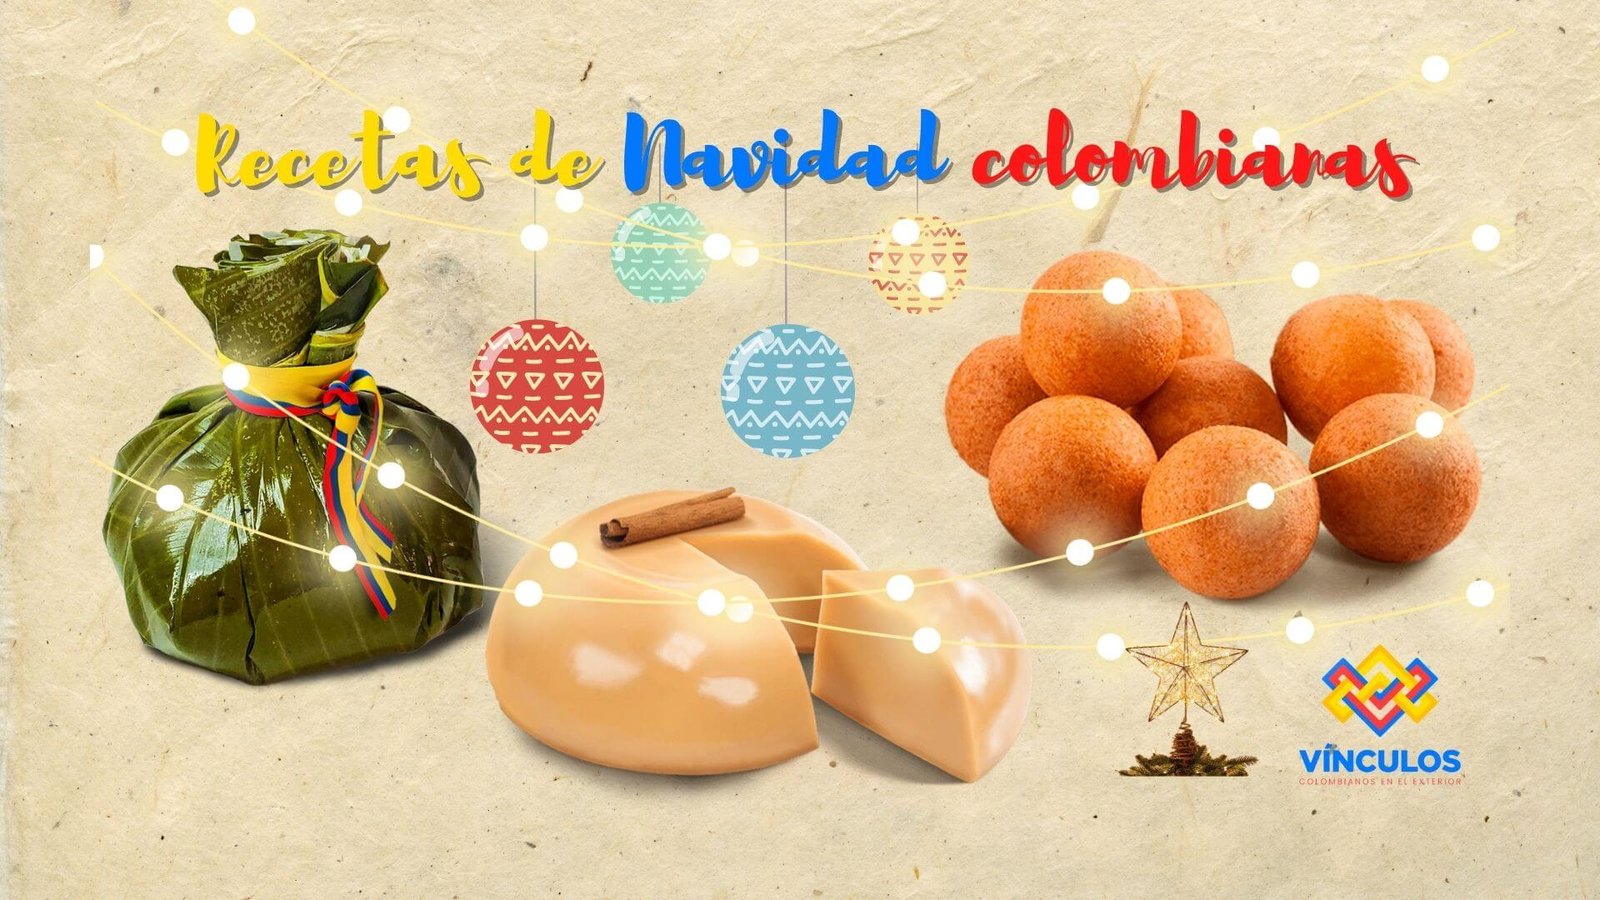 Kit de navidad colombiana para bajar y compartir -Vínculos